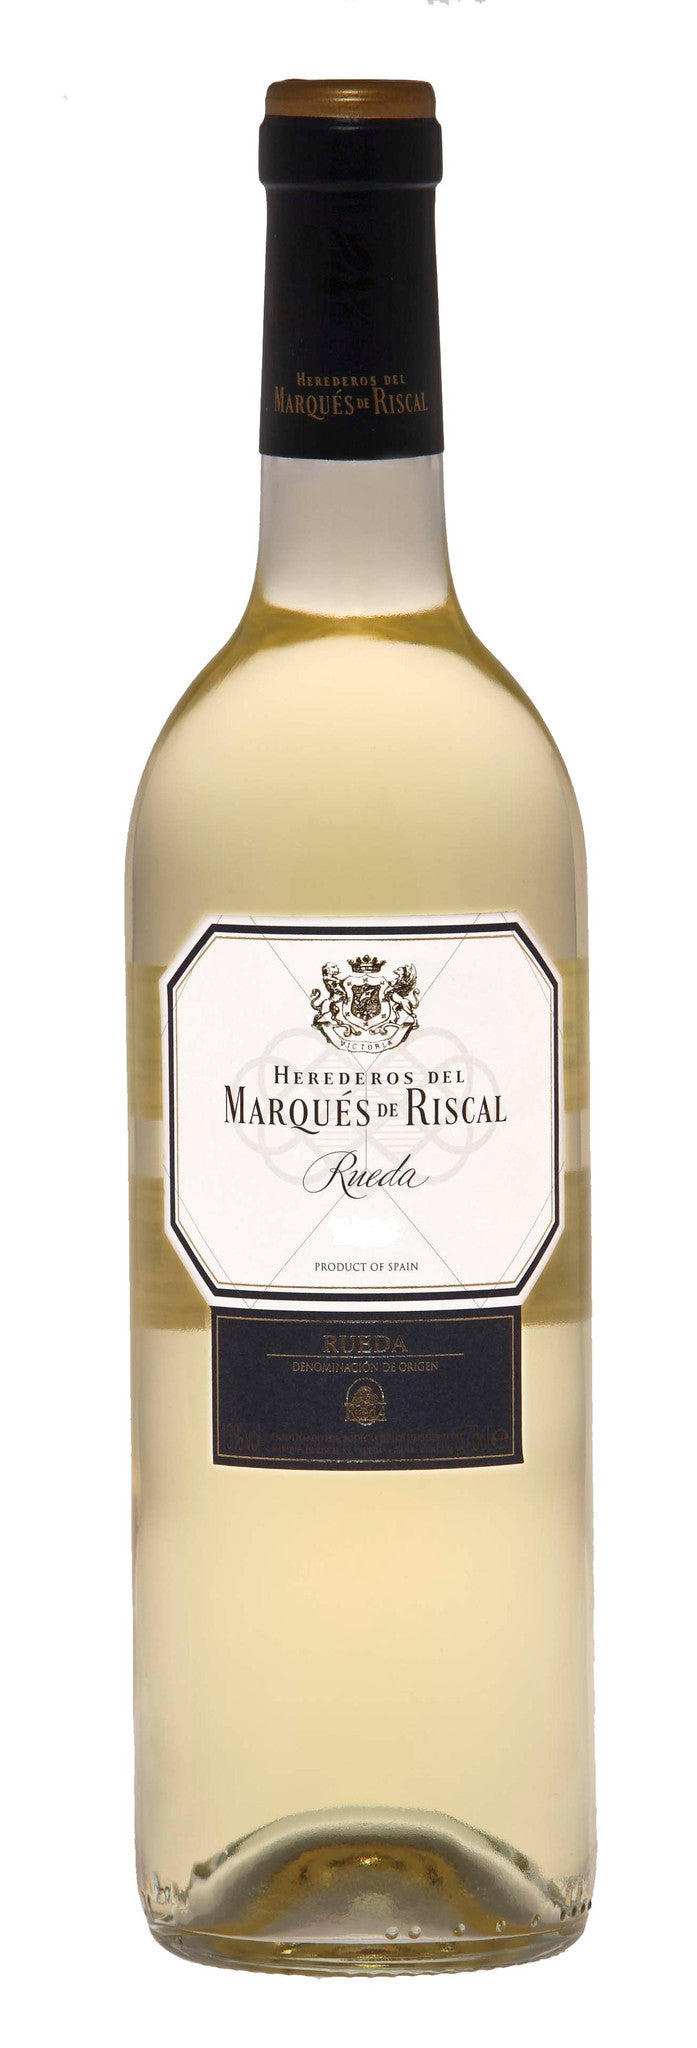 MARQUÉS DE RISCAL RUEDA 2013 - Bk Wine Depot Corp